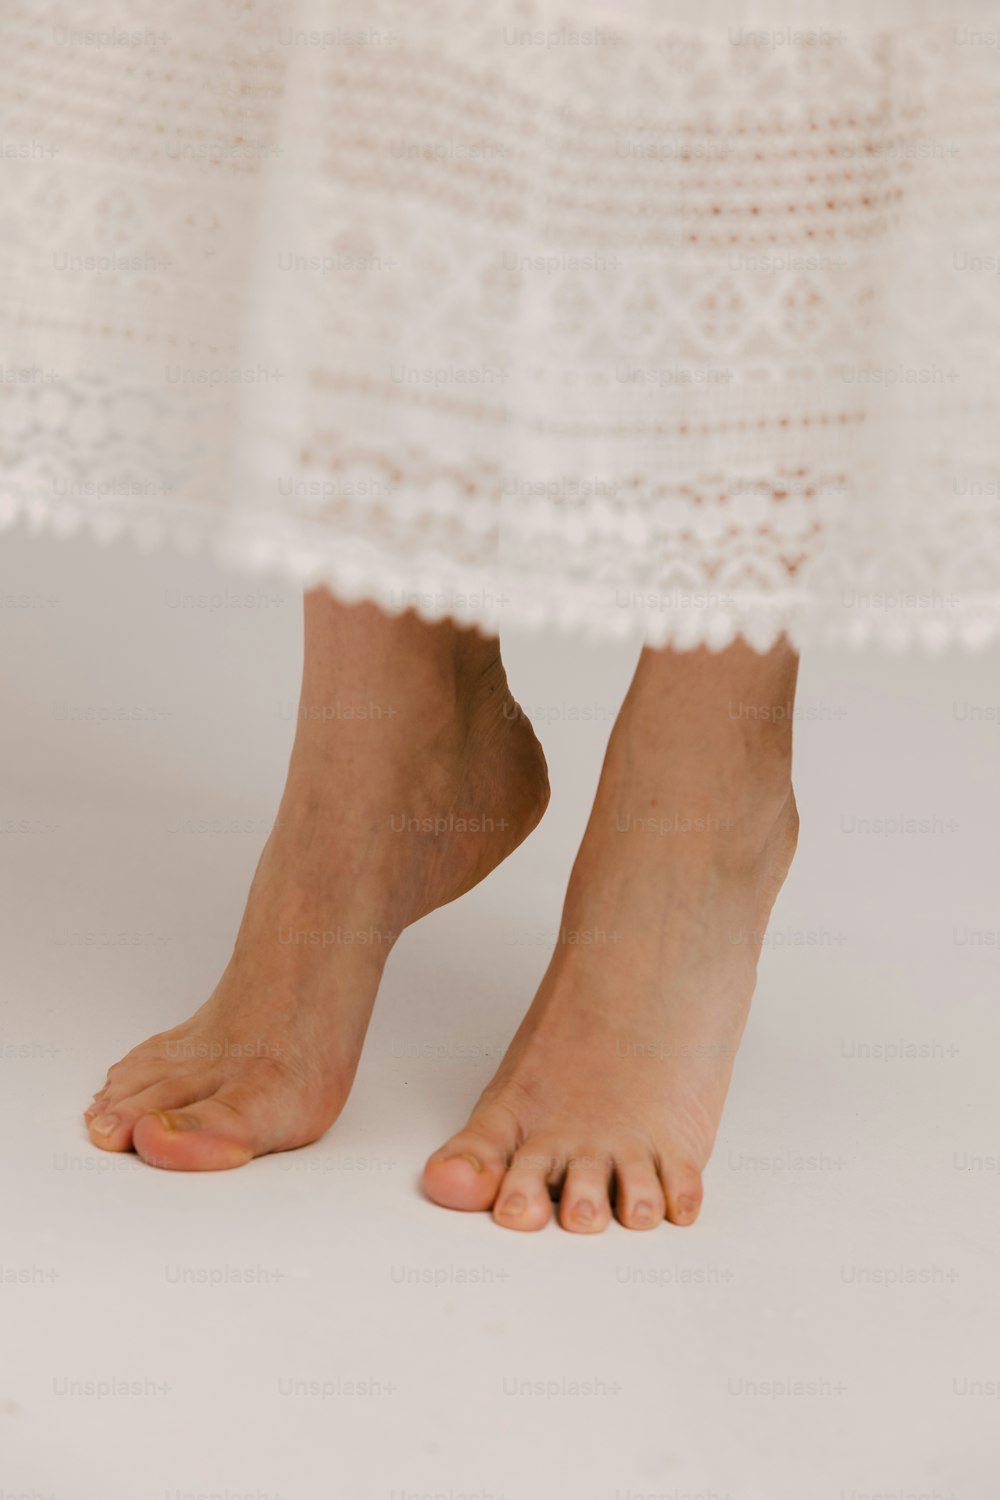 eine Nahaufnahme der nackten Füße einer Person in einem weißen Kleid